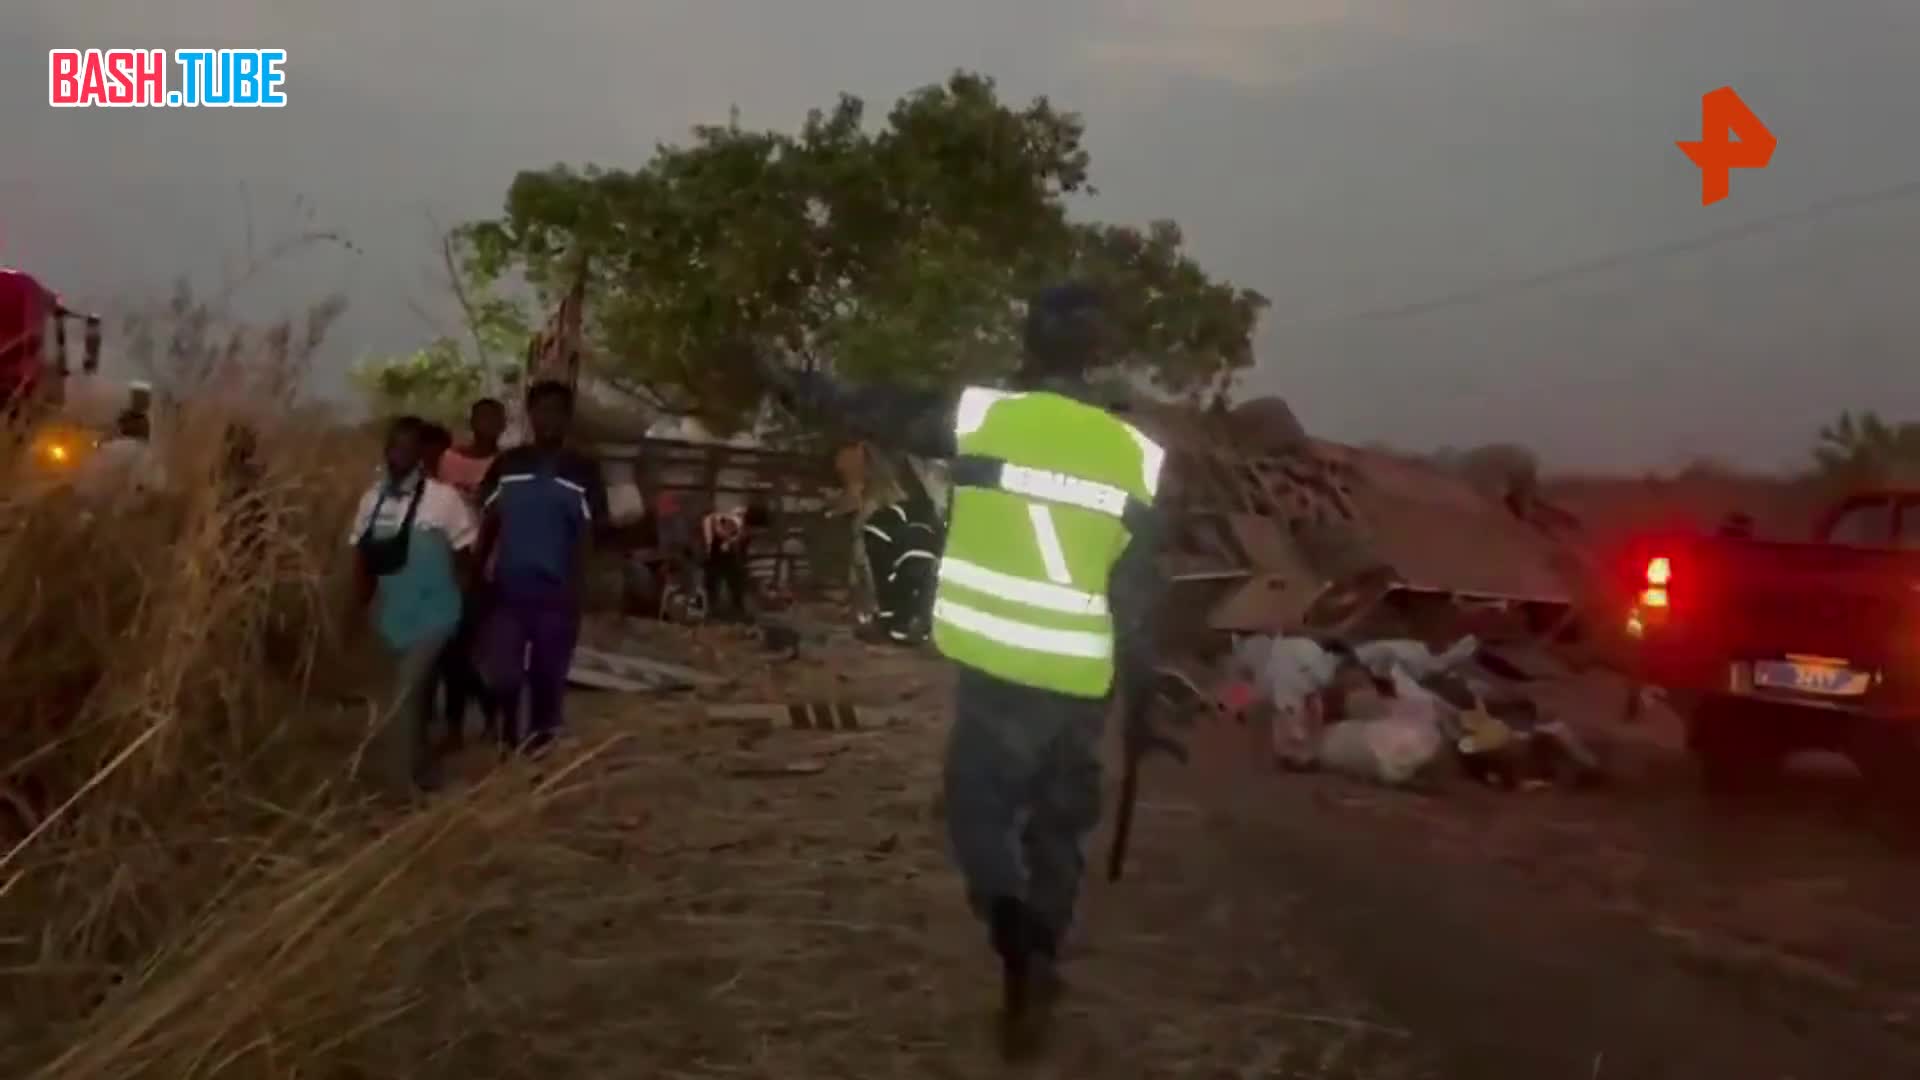 ⁣ Как минимум 13 человек погибли в результате аварии в Коунгхеуле в Сенегале, где перевернулся общественный автобус